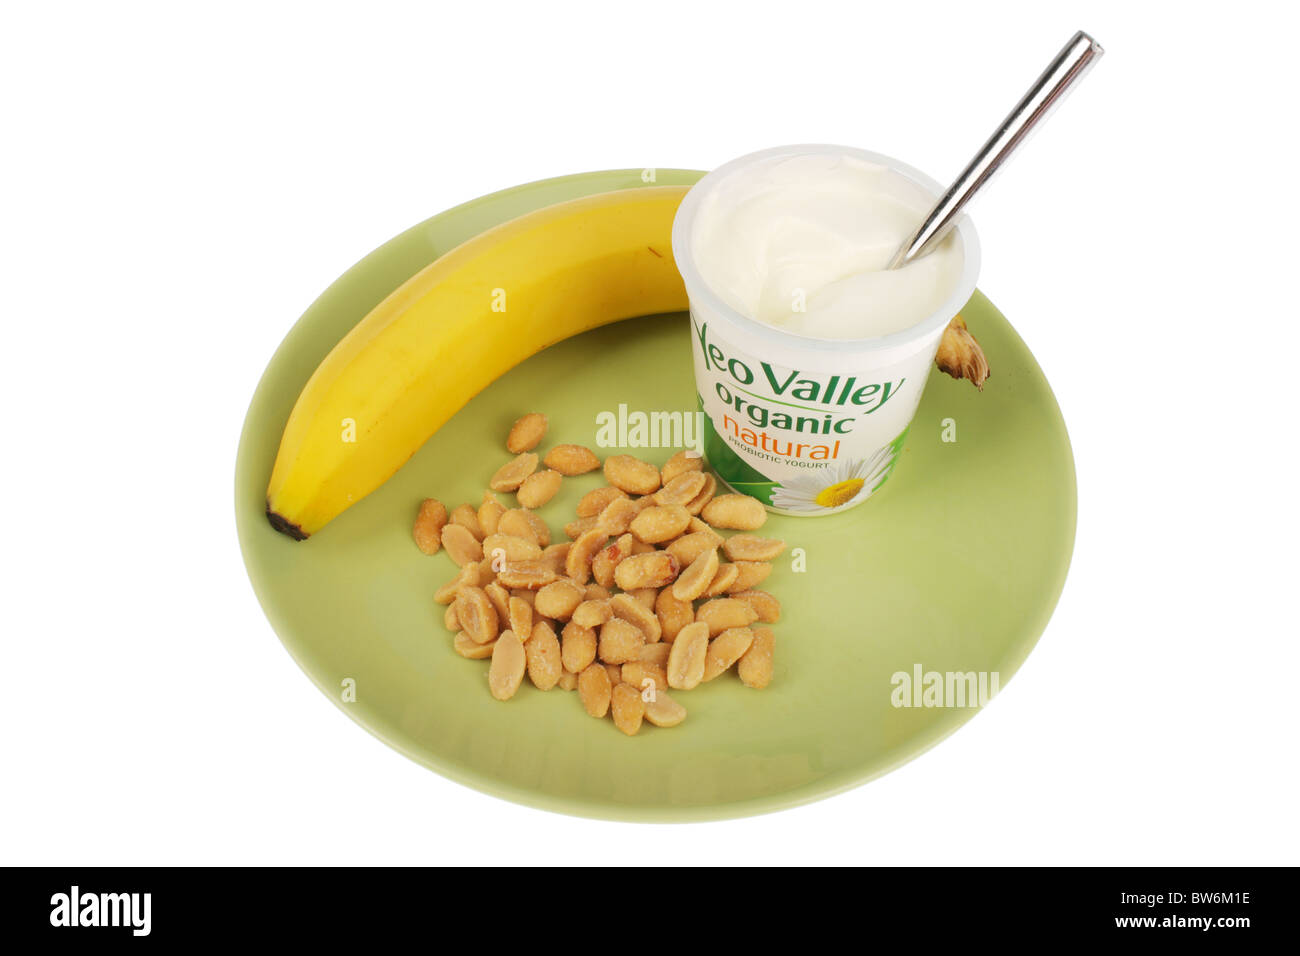 Yogurt with Banana and Salted Peanuts Stock Photo